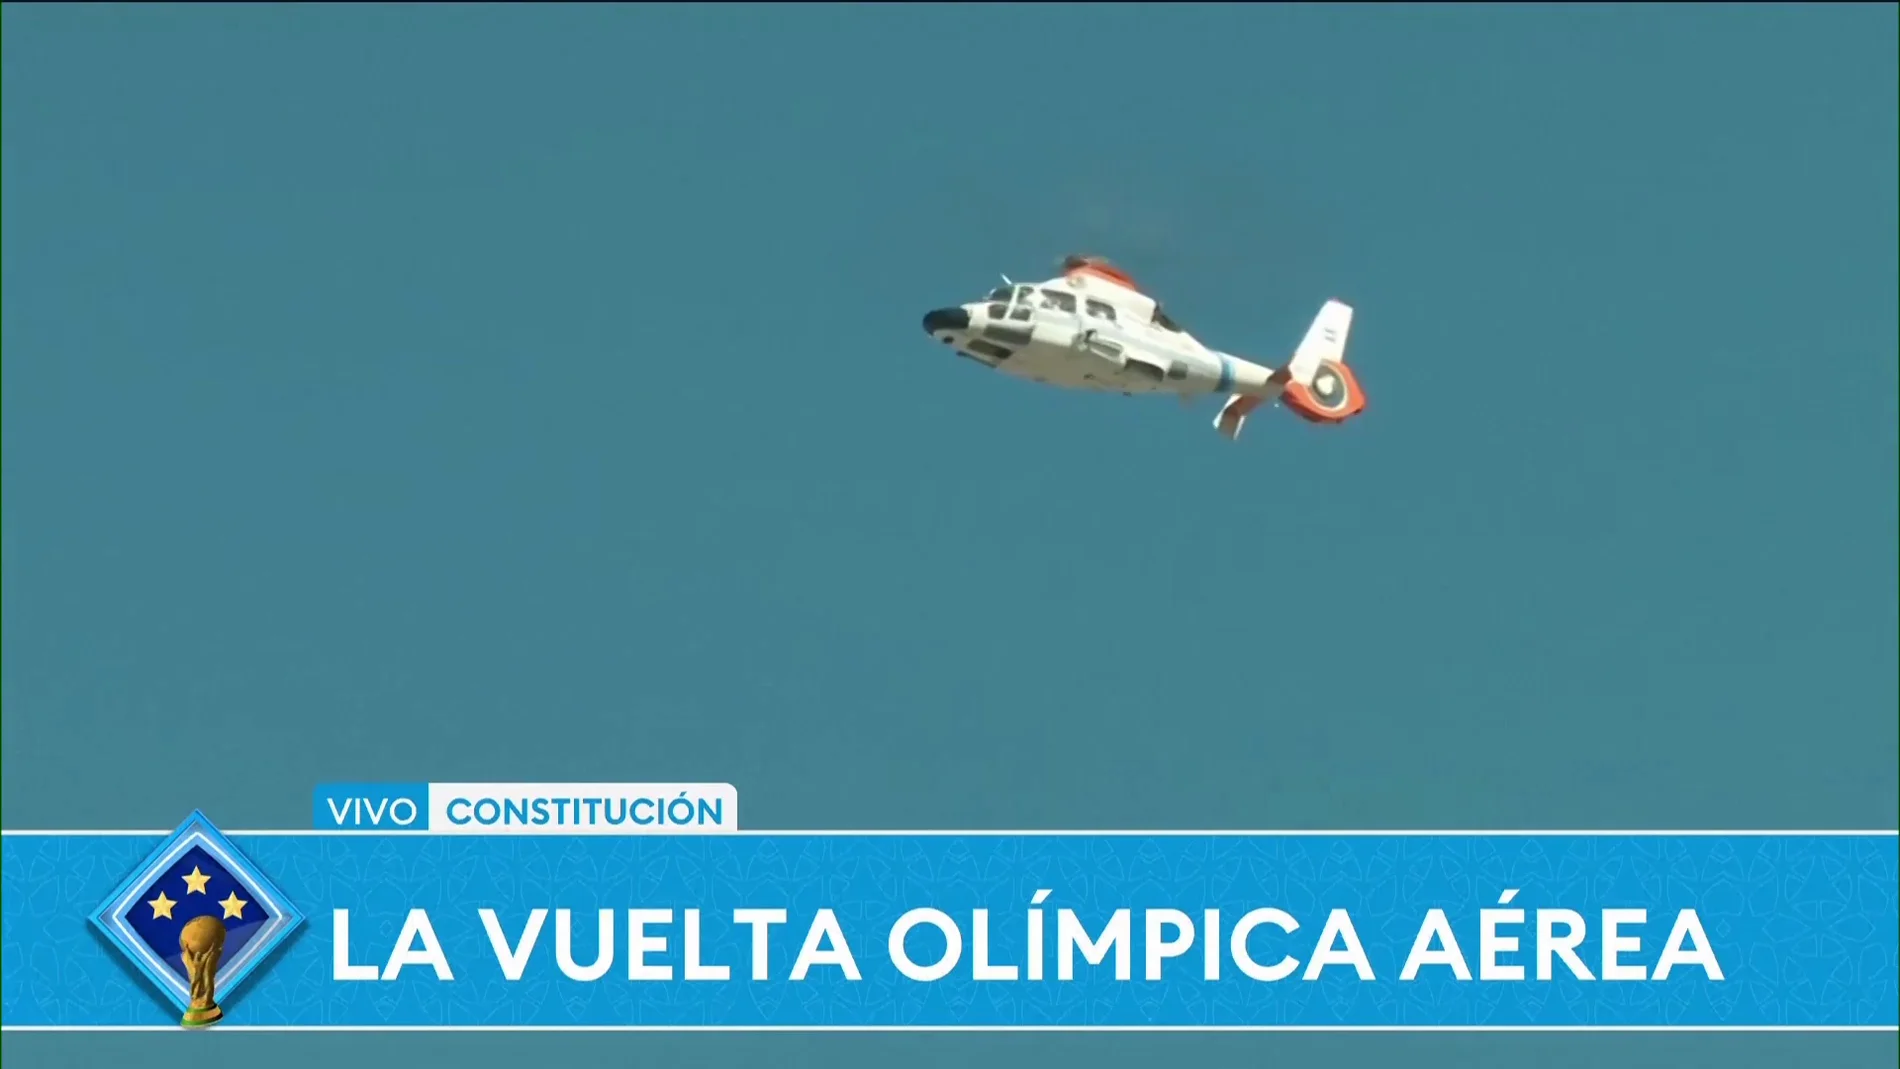 Lo nunca visto en Buenos Aires: los jugadores realizaron una vuelta olímpica subidos a tres helicópteros